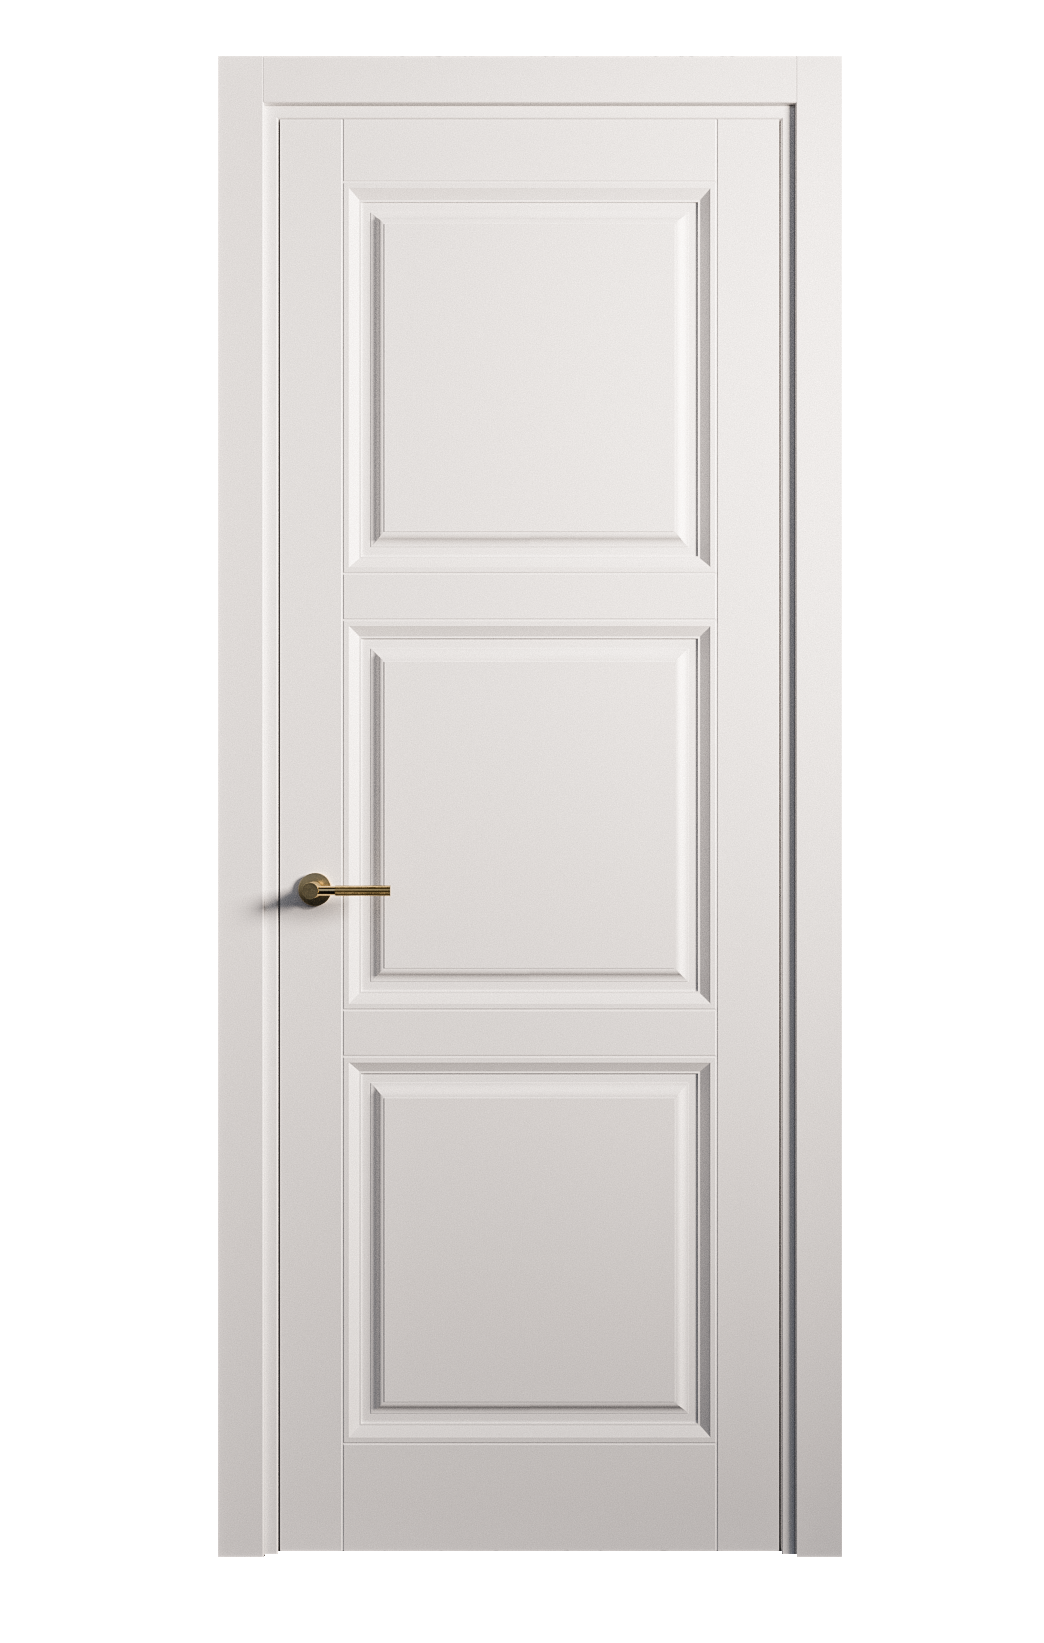 Межкомнатная дверь Venezia-3 глухая эмаль ral 9003 25780